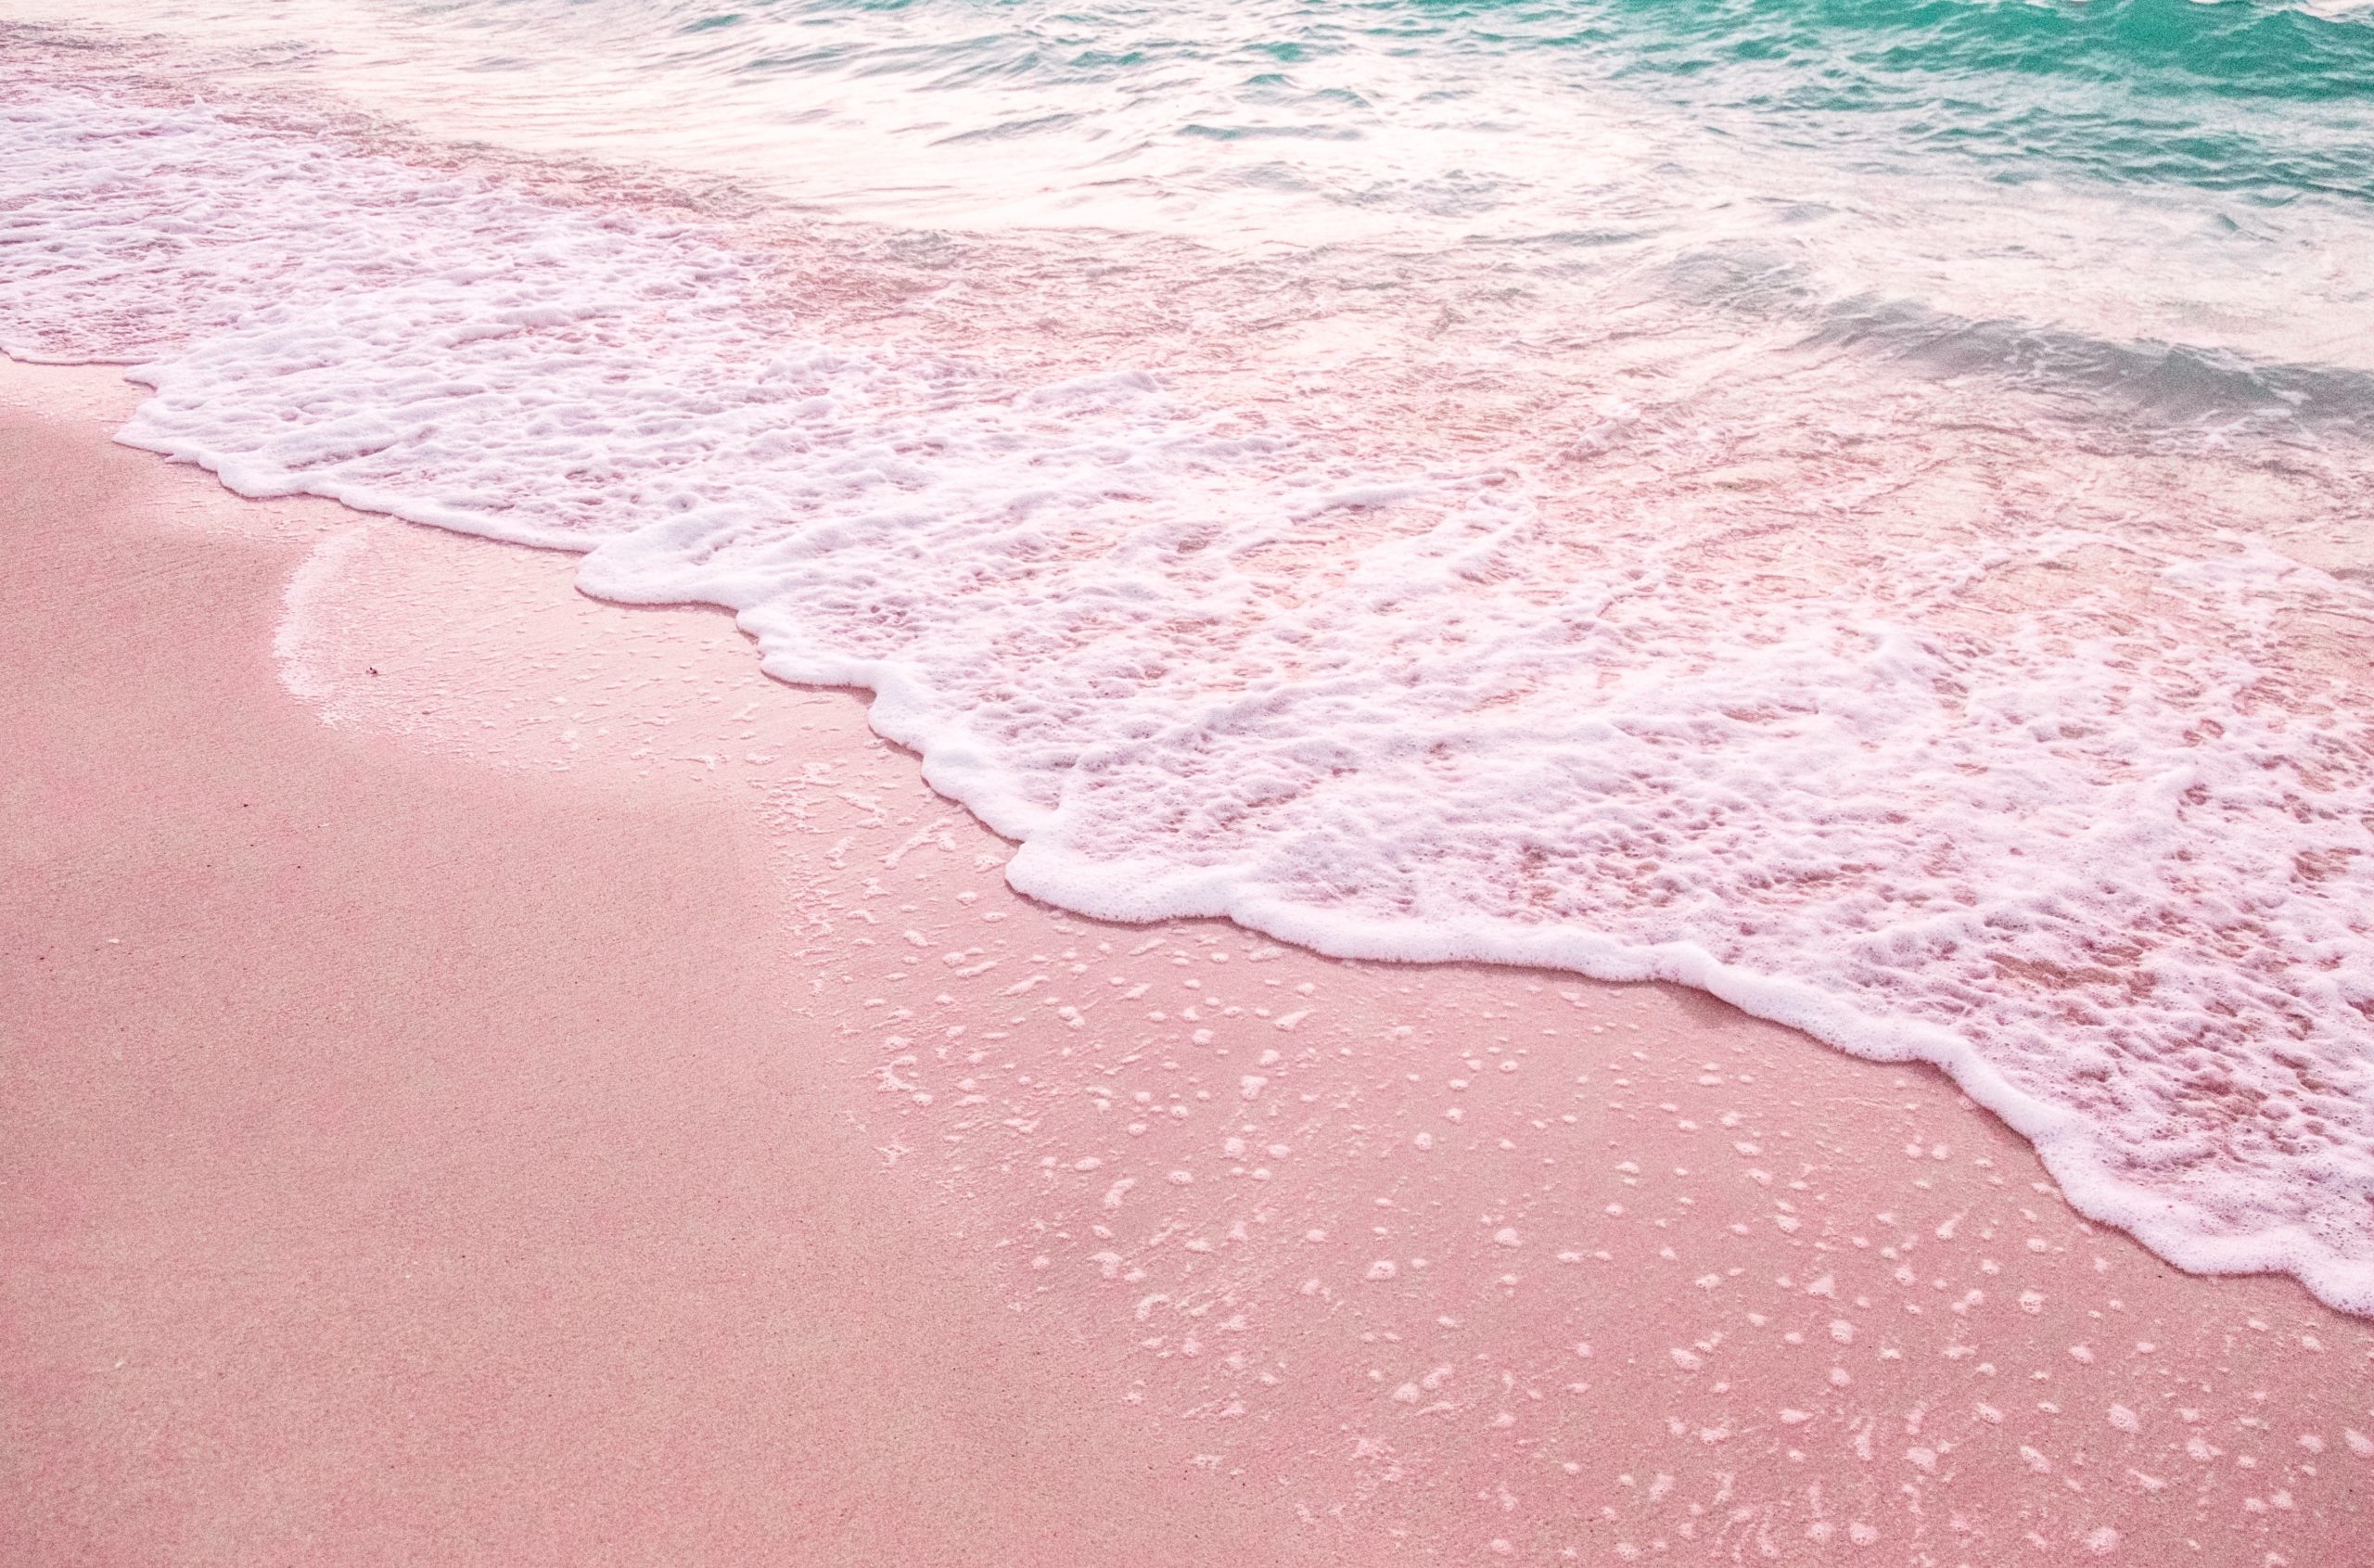 バハマの ピンクサンドビーチ は桃色の砂浜でインスタ映え カリブ海に浮かぶバハマ諸島の奇跡 ナナイログラデーション